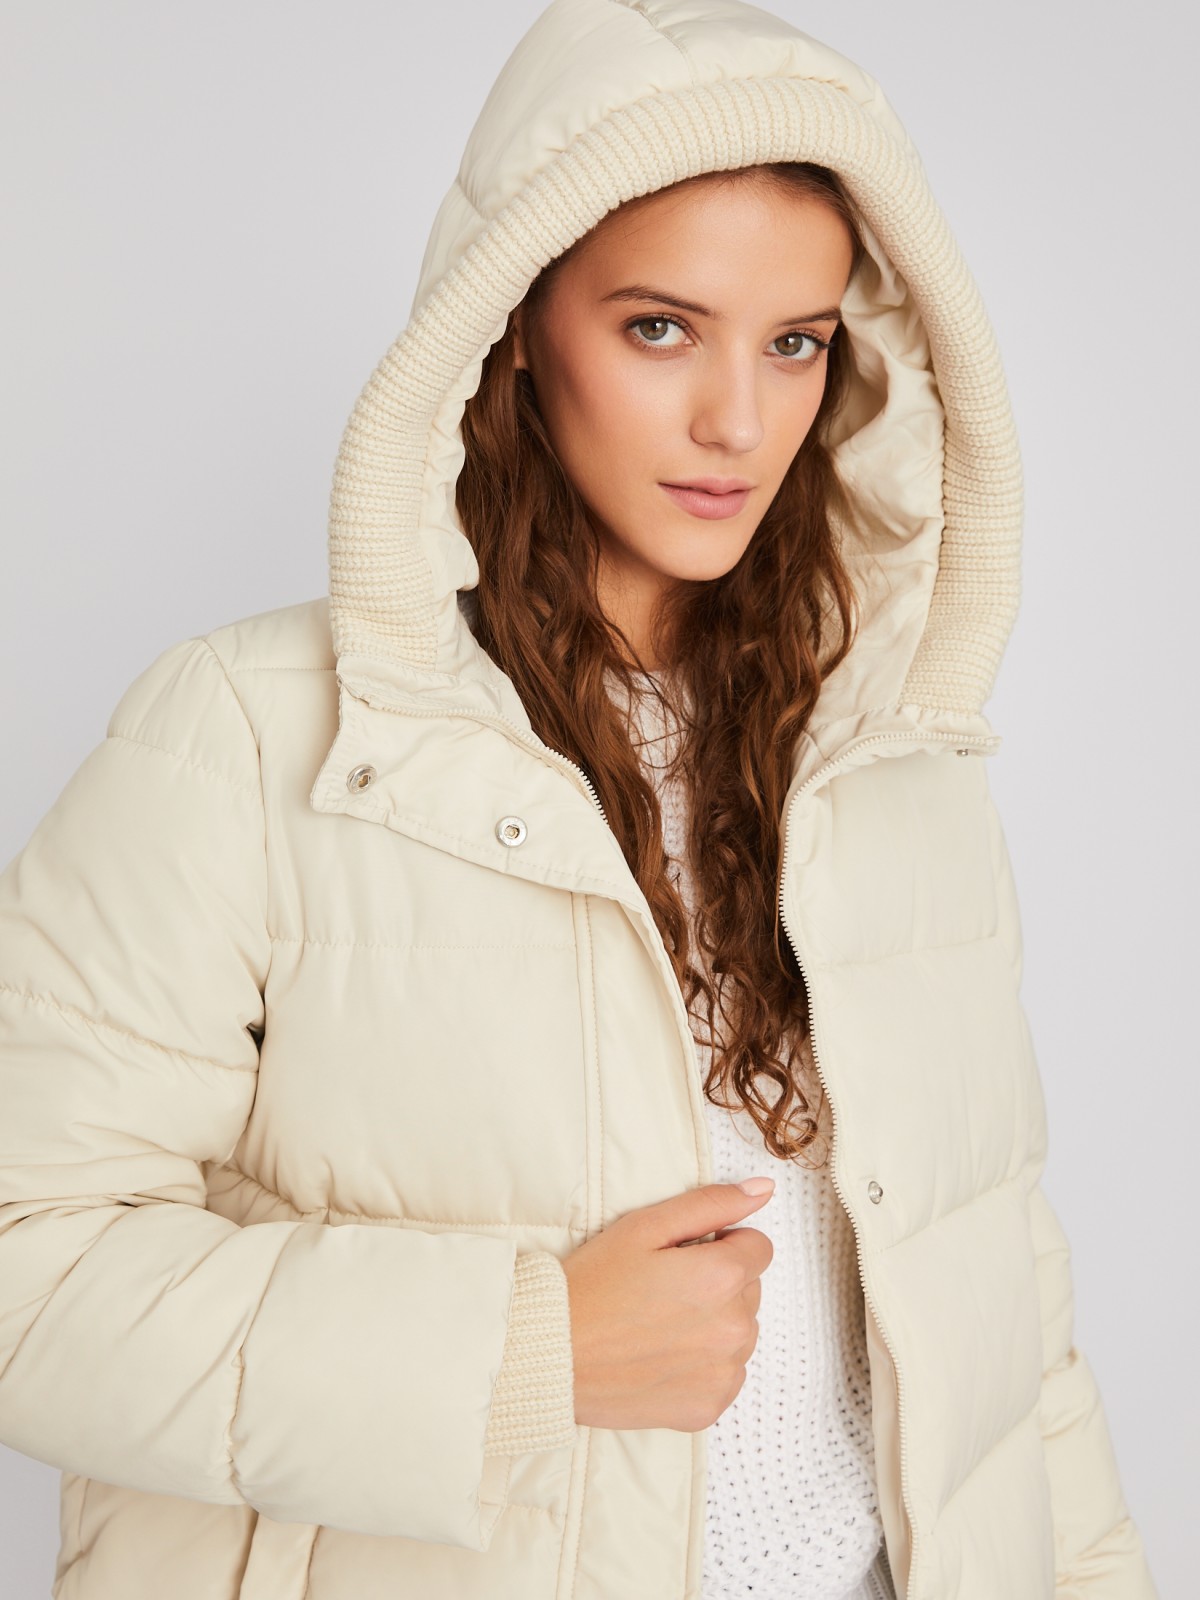 Тёплая стёганая куртка с капюшоном и внутренними манжетами-риб zolla 023345102064, цвет молоко, размер XS - фото 3